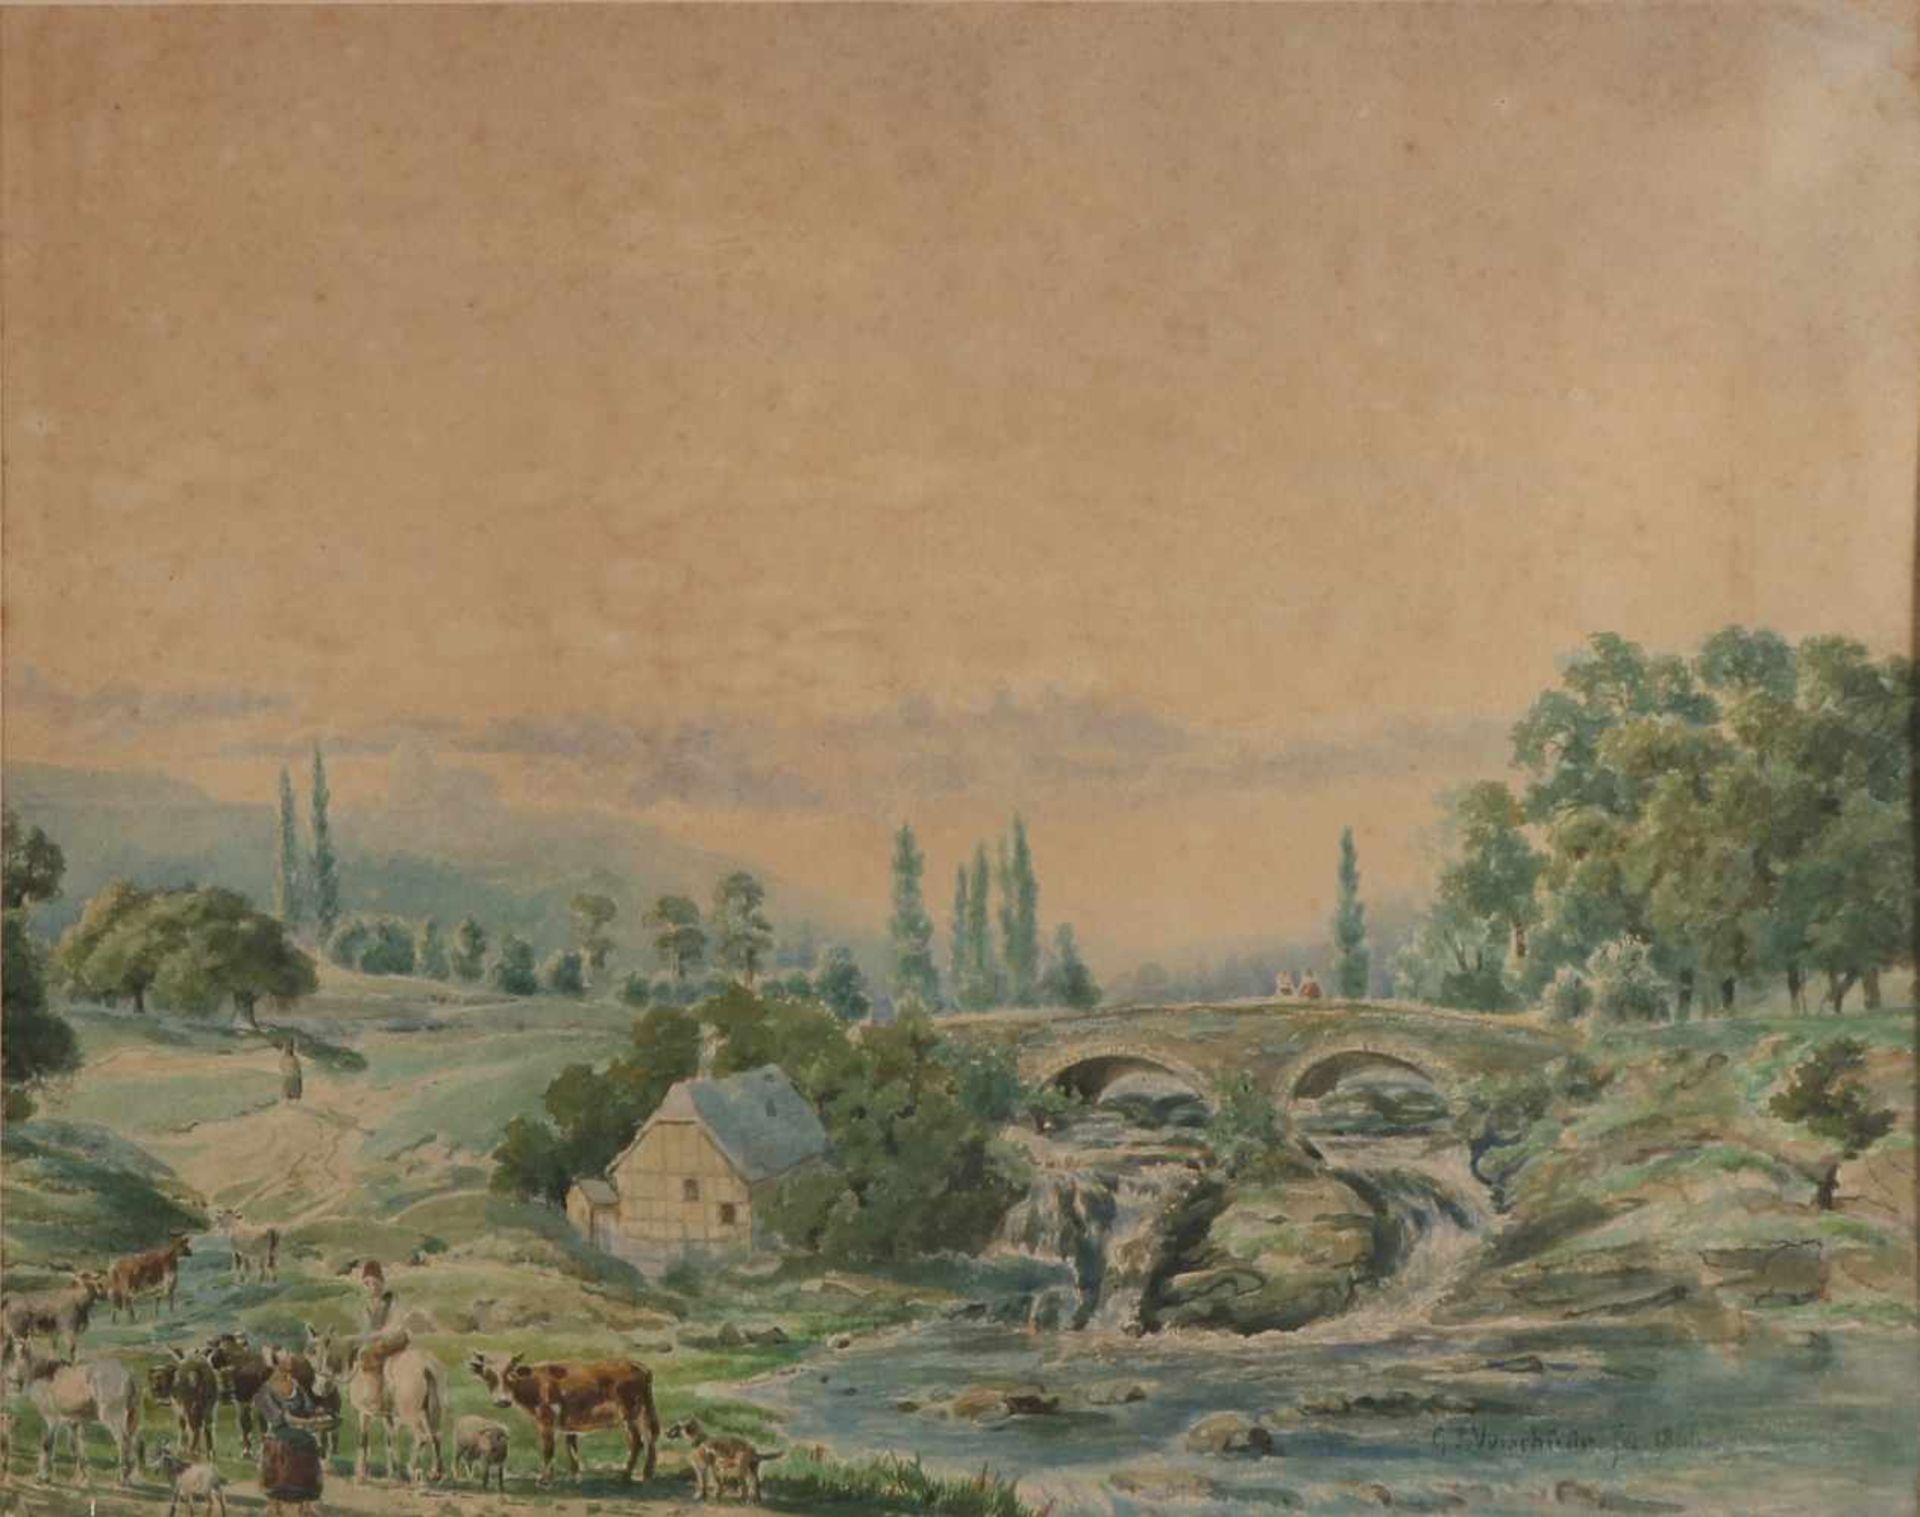 GP Verschuur, Landschaft mit Wasserfall, Hirten und Rindern. 1866. Aquarell auf Papier. Abmessungen: